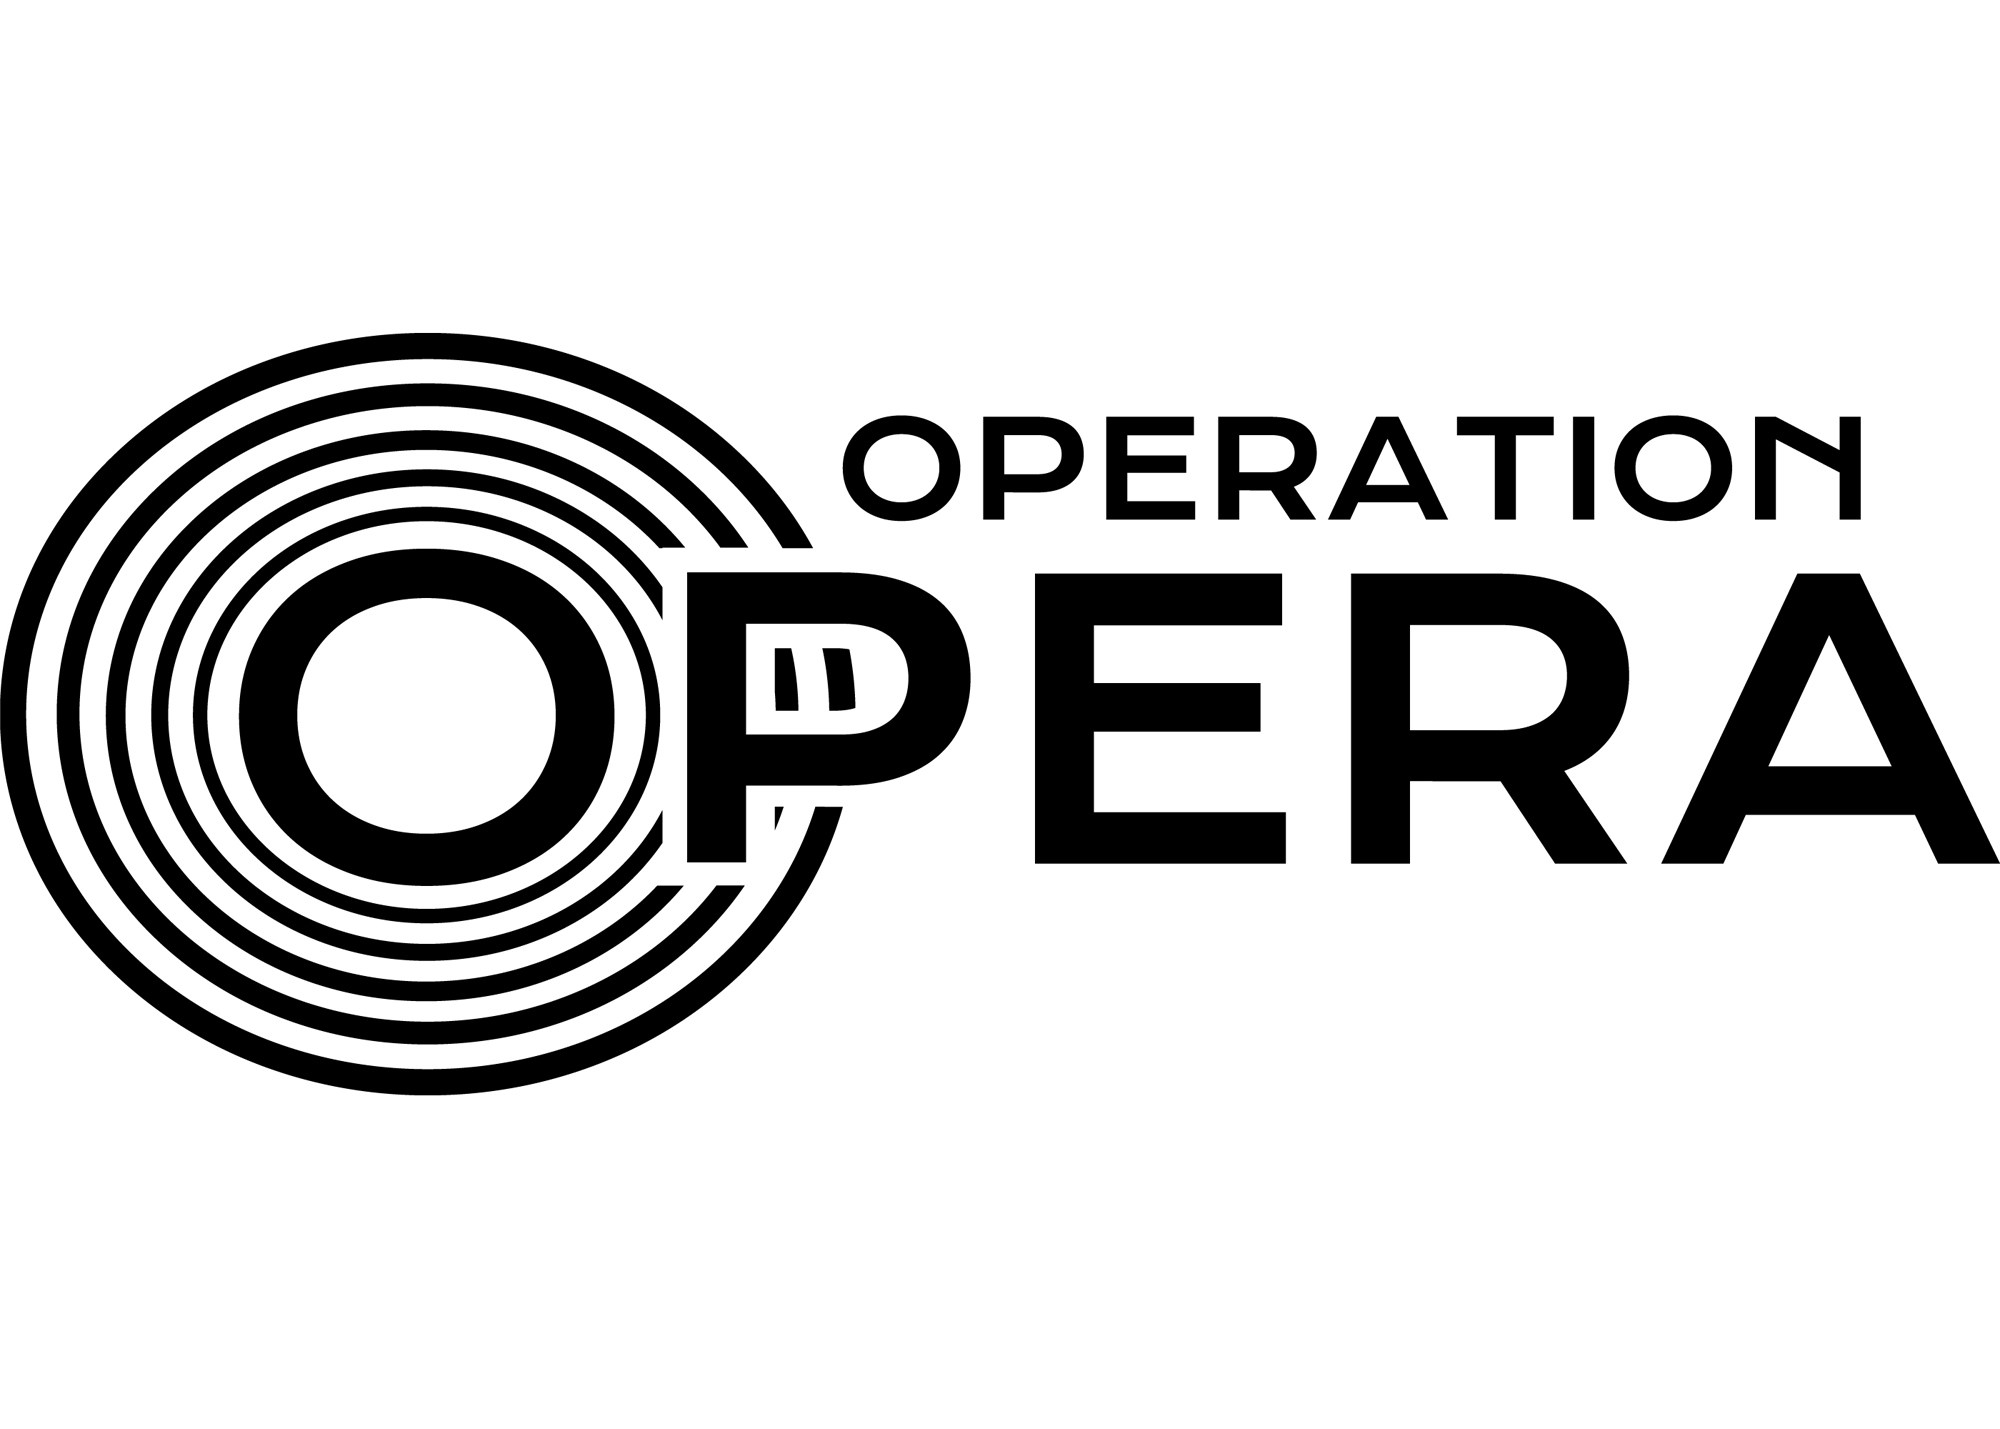 OPERATION OPERA